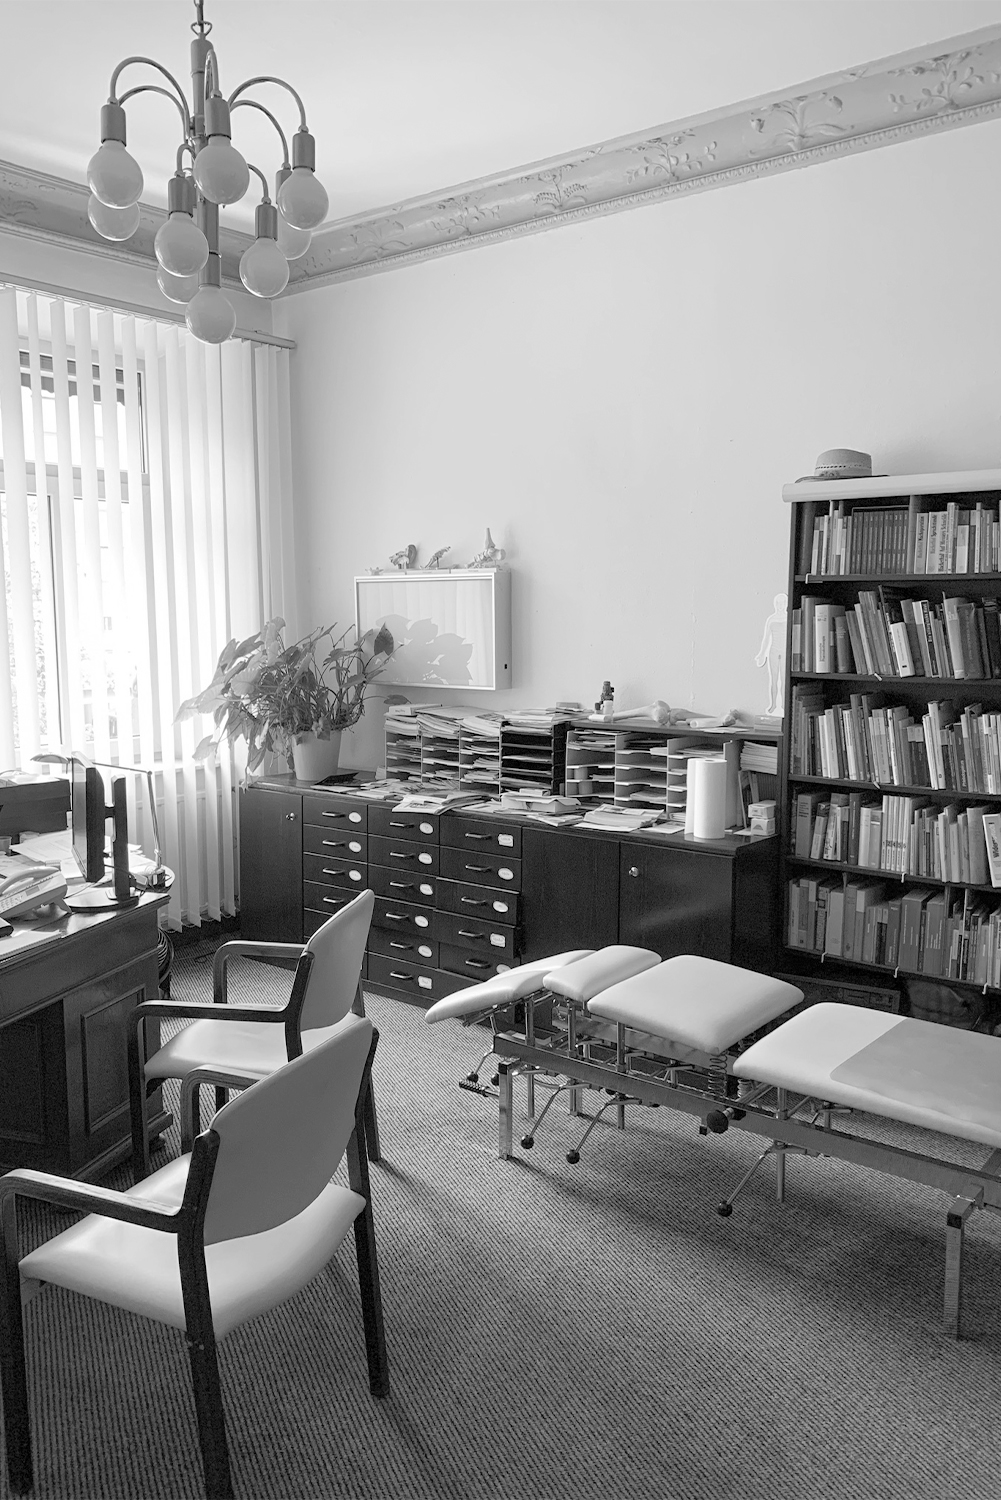 Arztpraxis mit Schreibtisch, Stuhl und Bücherregal im modernen Stil des Ärztehauses, Dr. Sell und Dr. Stocker in Nürnberg